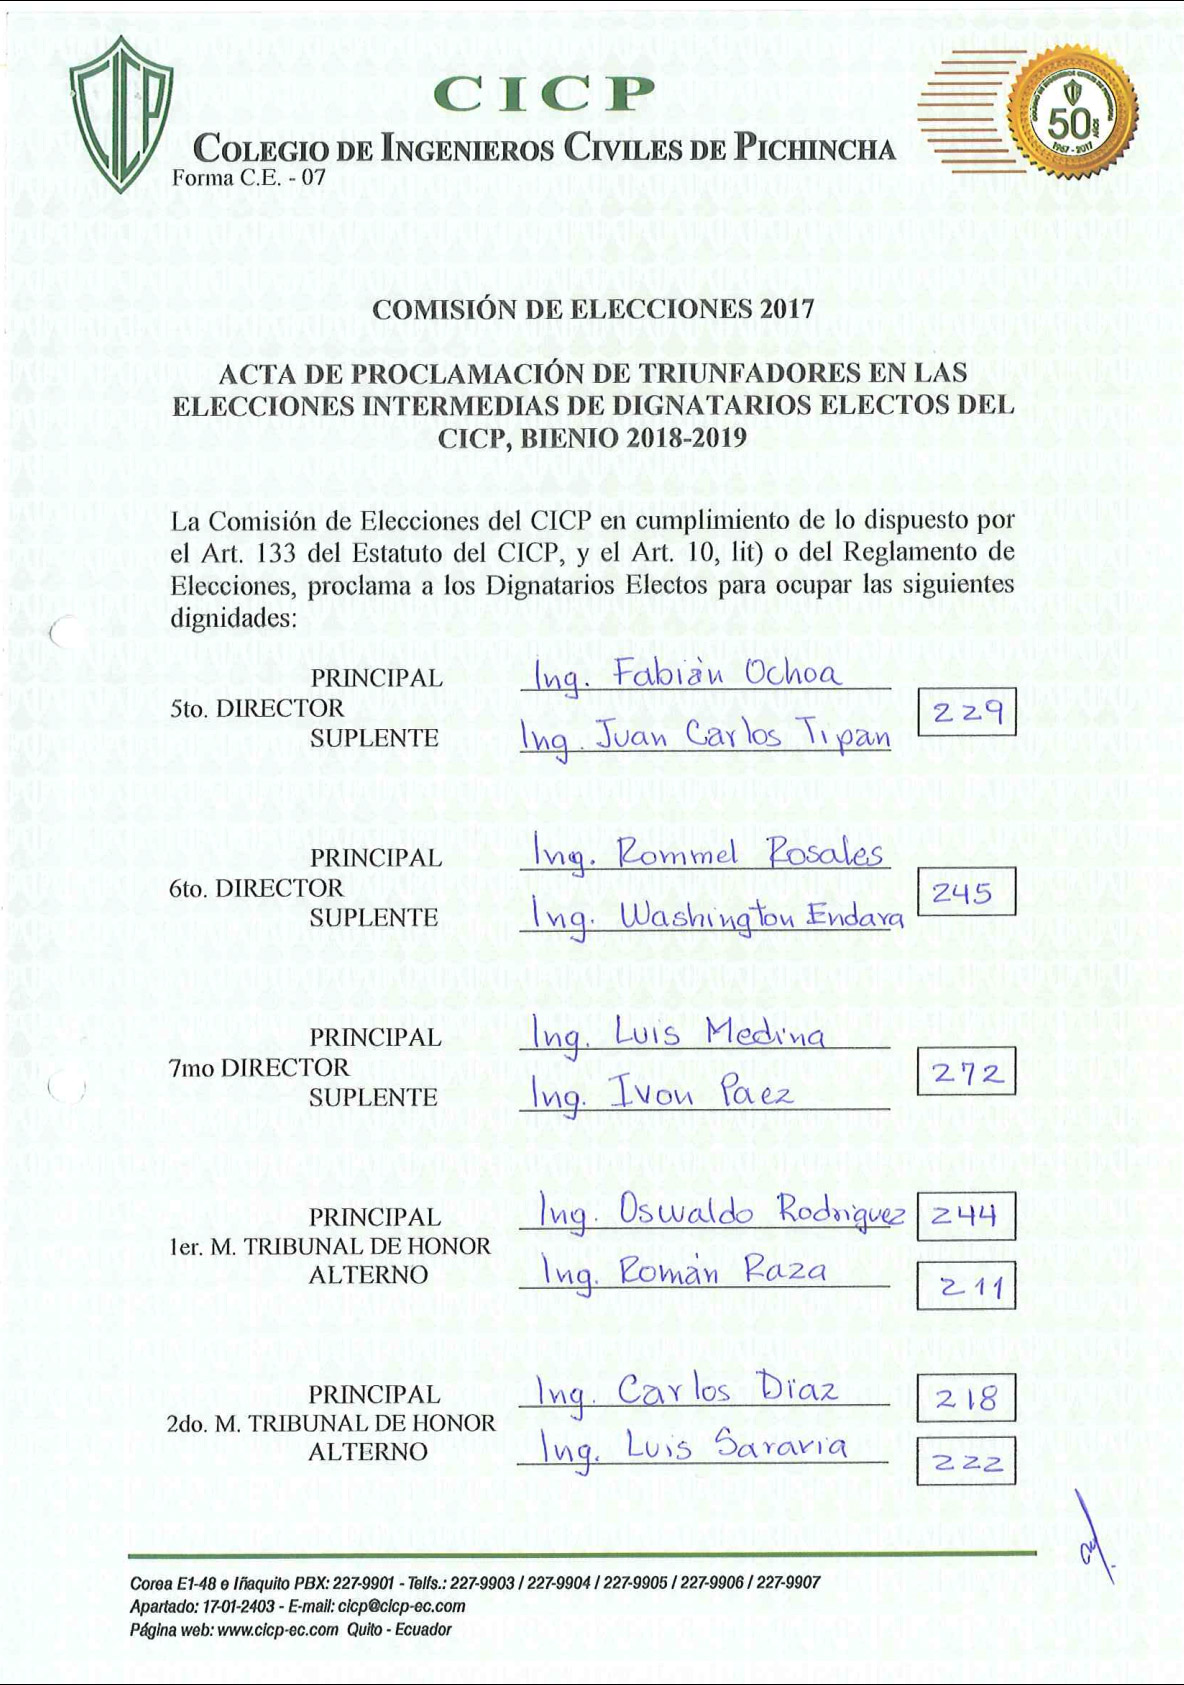 Acta de Proclamación de Triunfadores en las Elecciones Intermedias